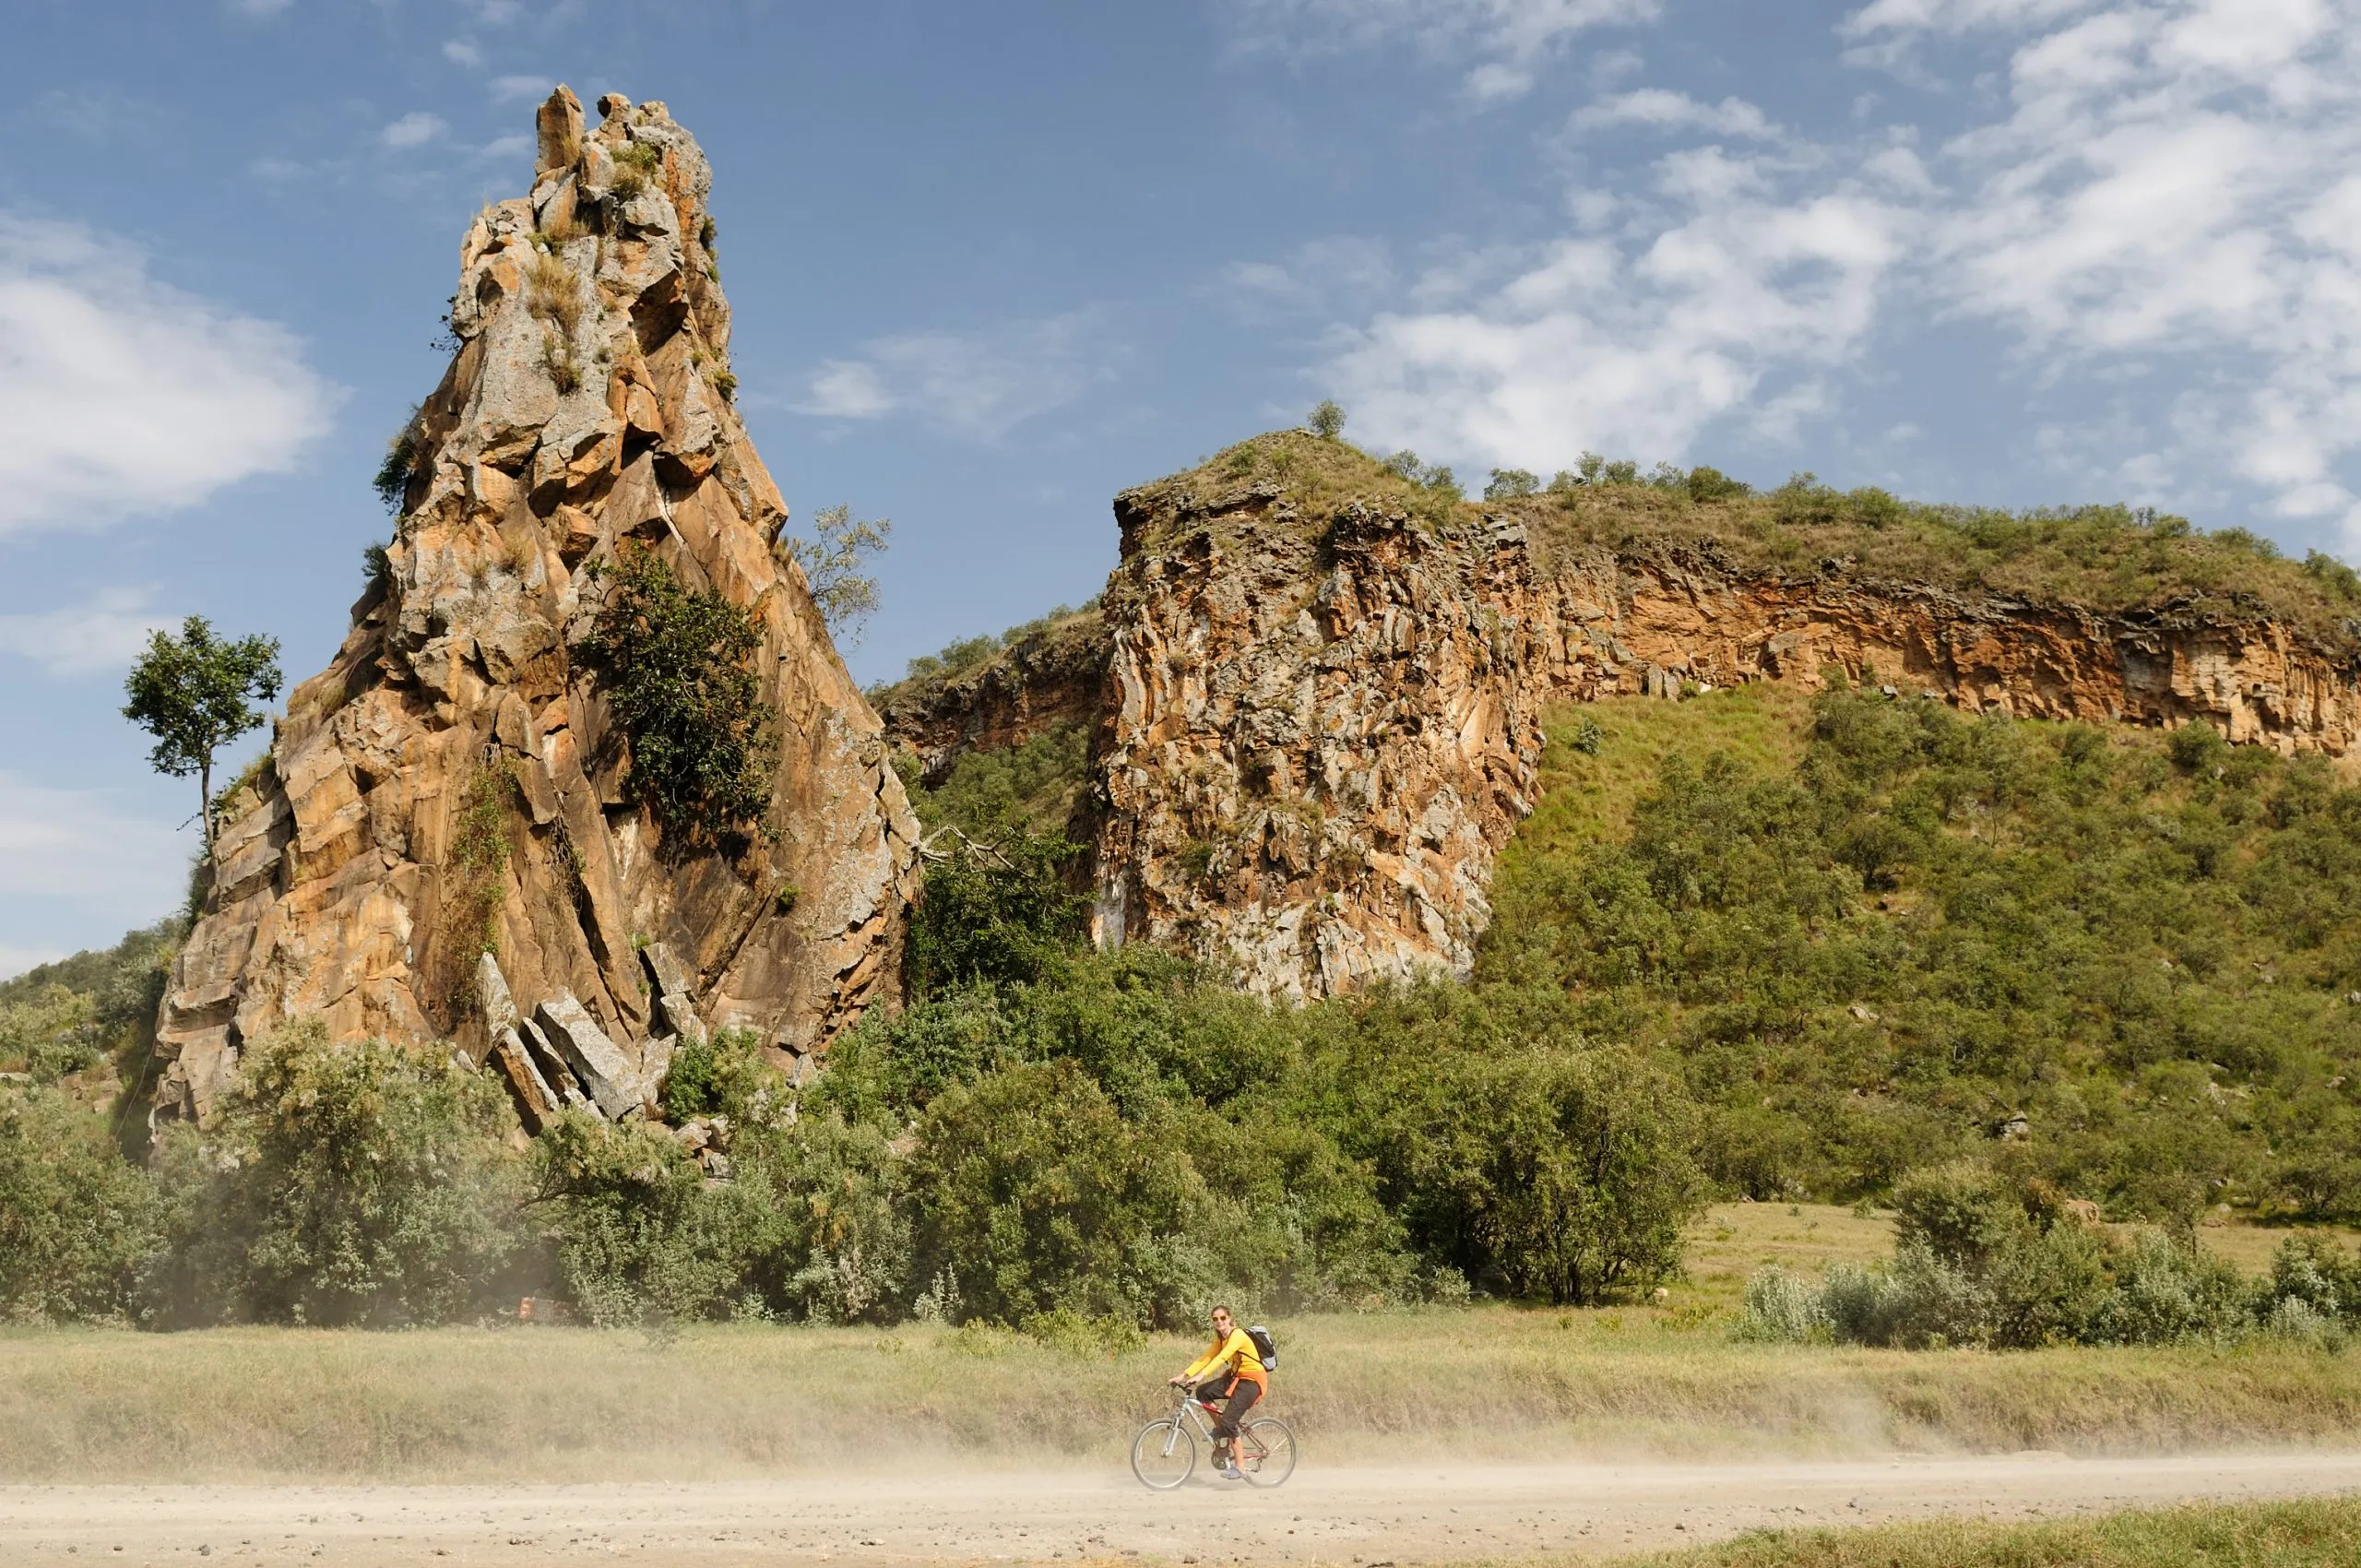 De toerist fietst aan de voet van Stark rotstorens in het Hells Gate National Park in Kenia